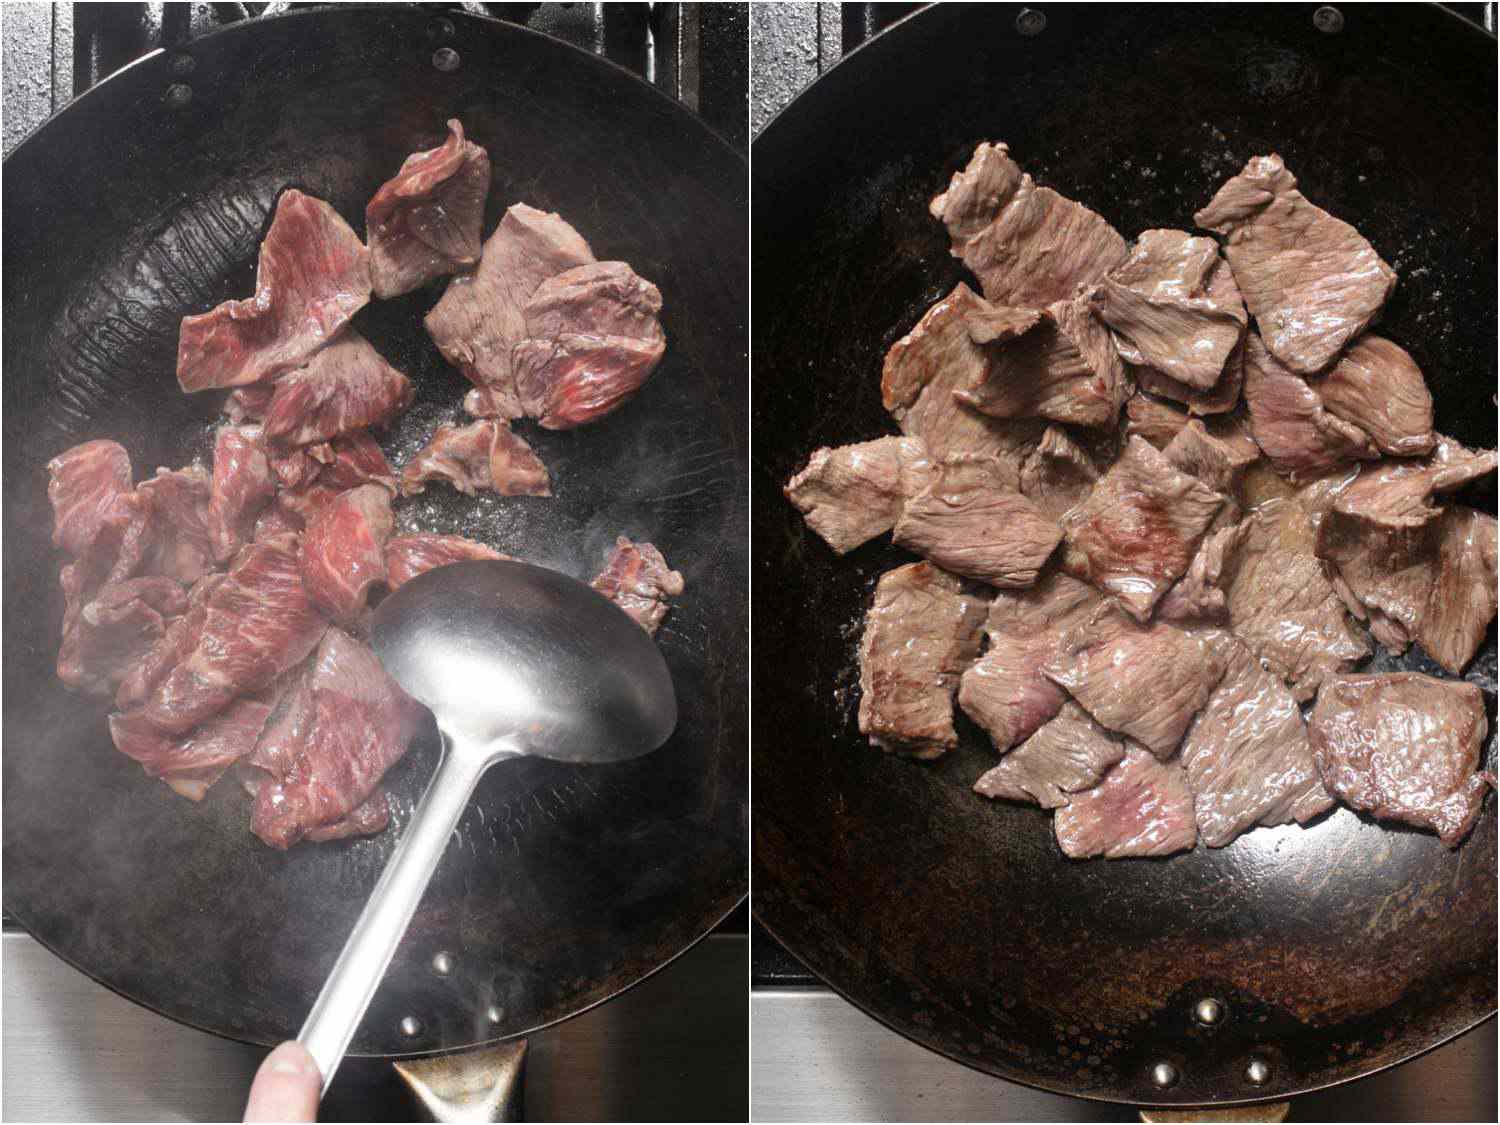 拼贴:单面煎熟的牛肉，多为熟牛肉，有少许浅粉色斑点。